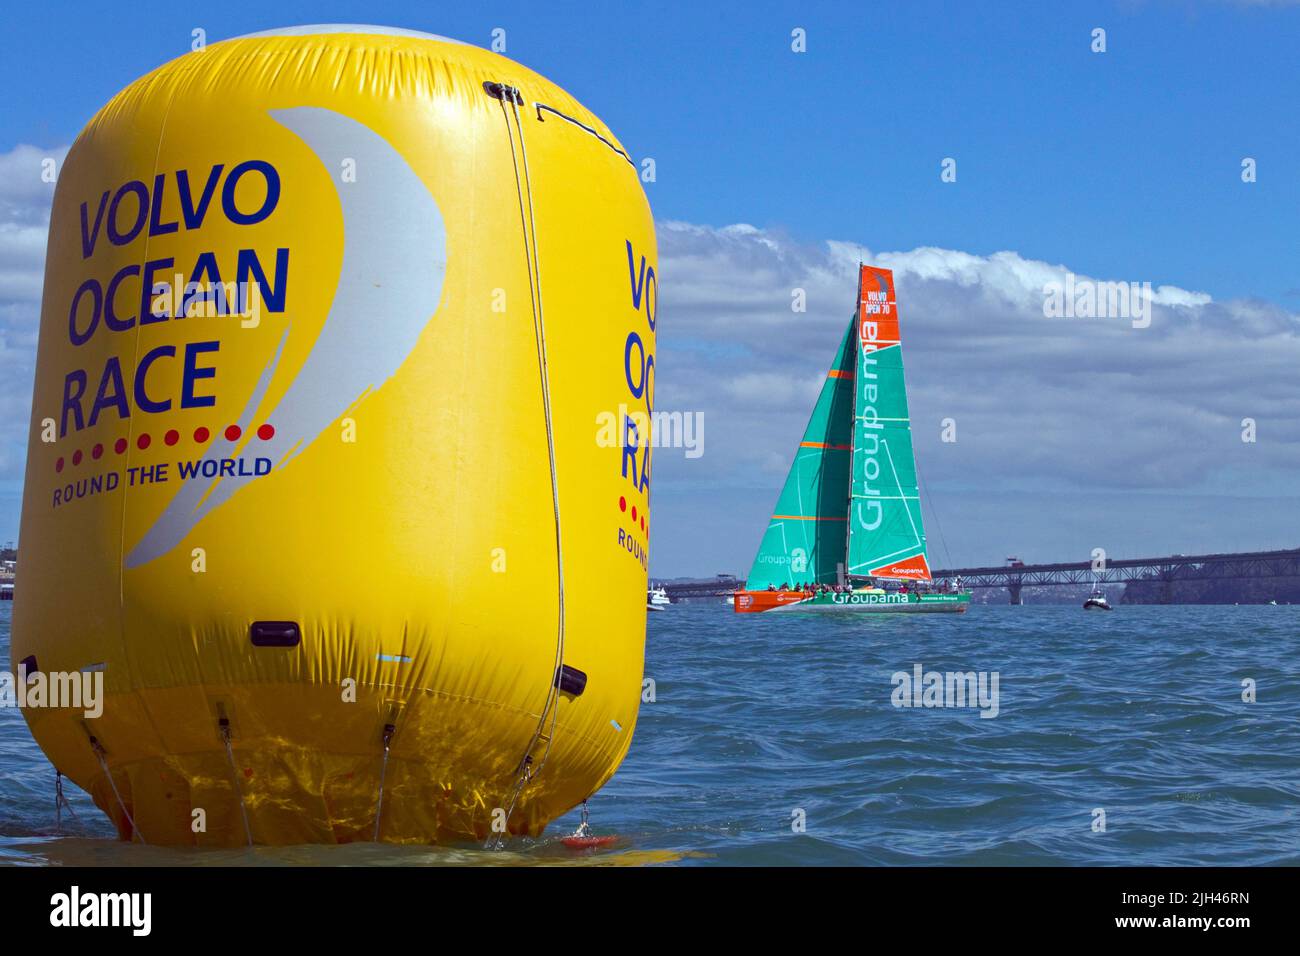 Groupama Sailing Team participa en la carrera Pro-Am como parte de las actividades en el puerto de la Volvo Ocean Race, Auckland, Nueva Zelanda, Foto de stock